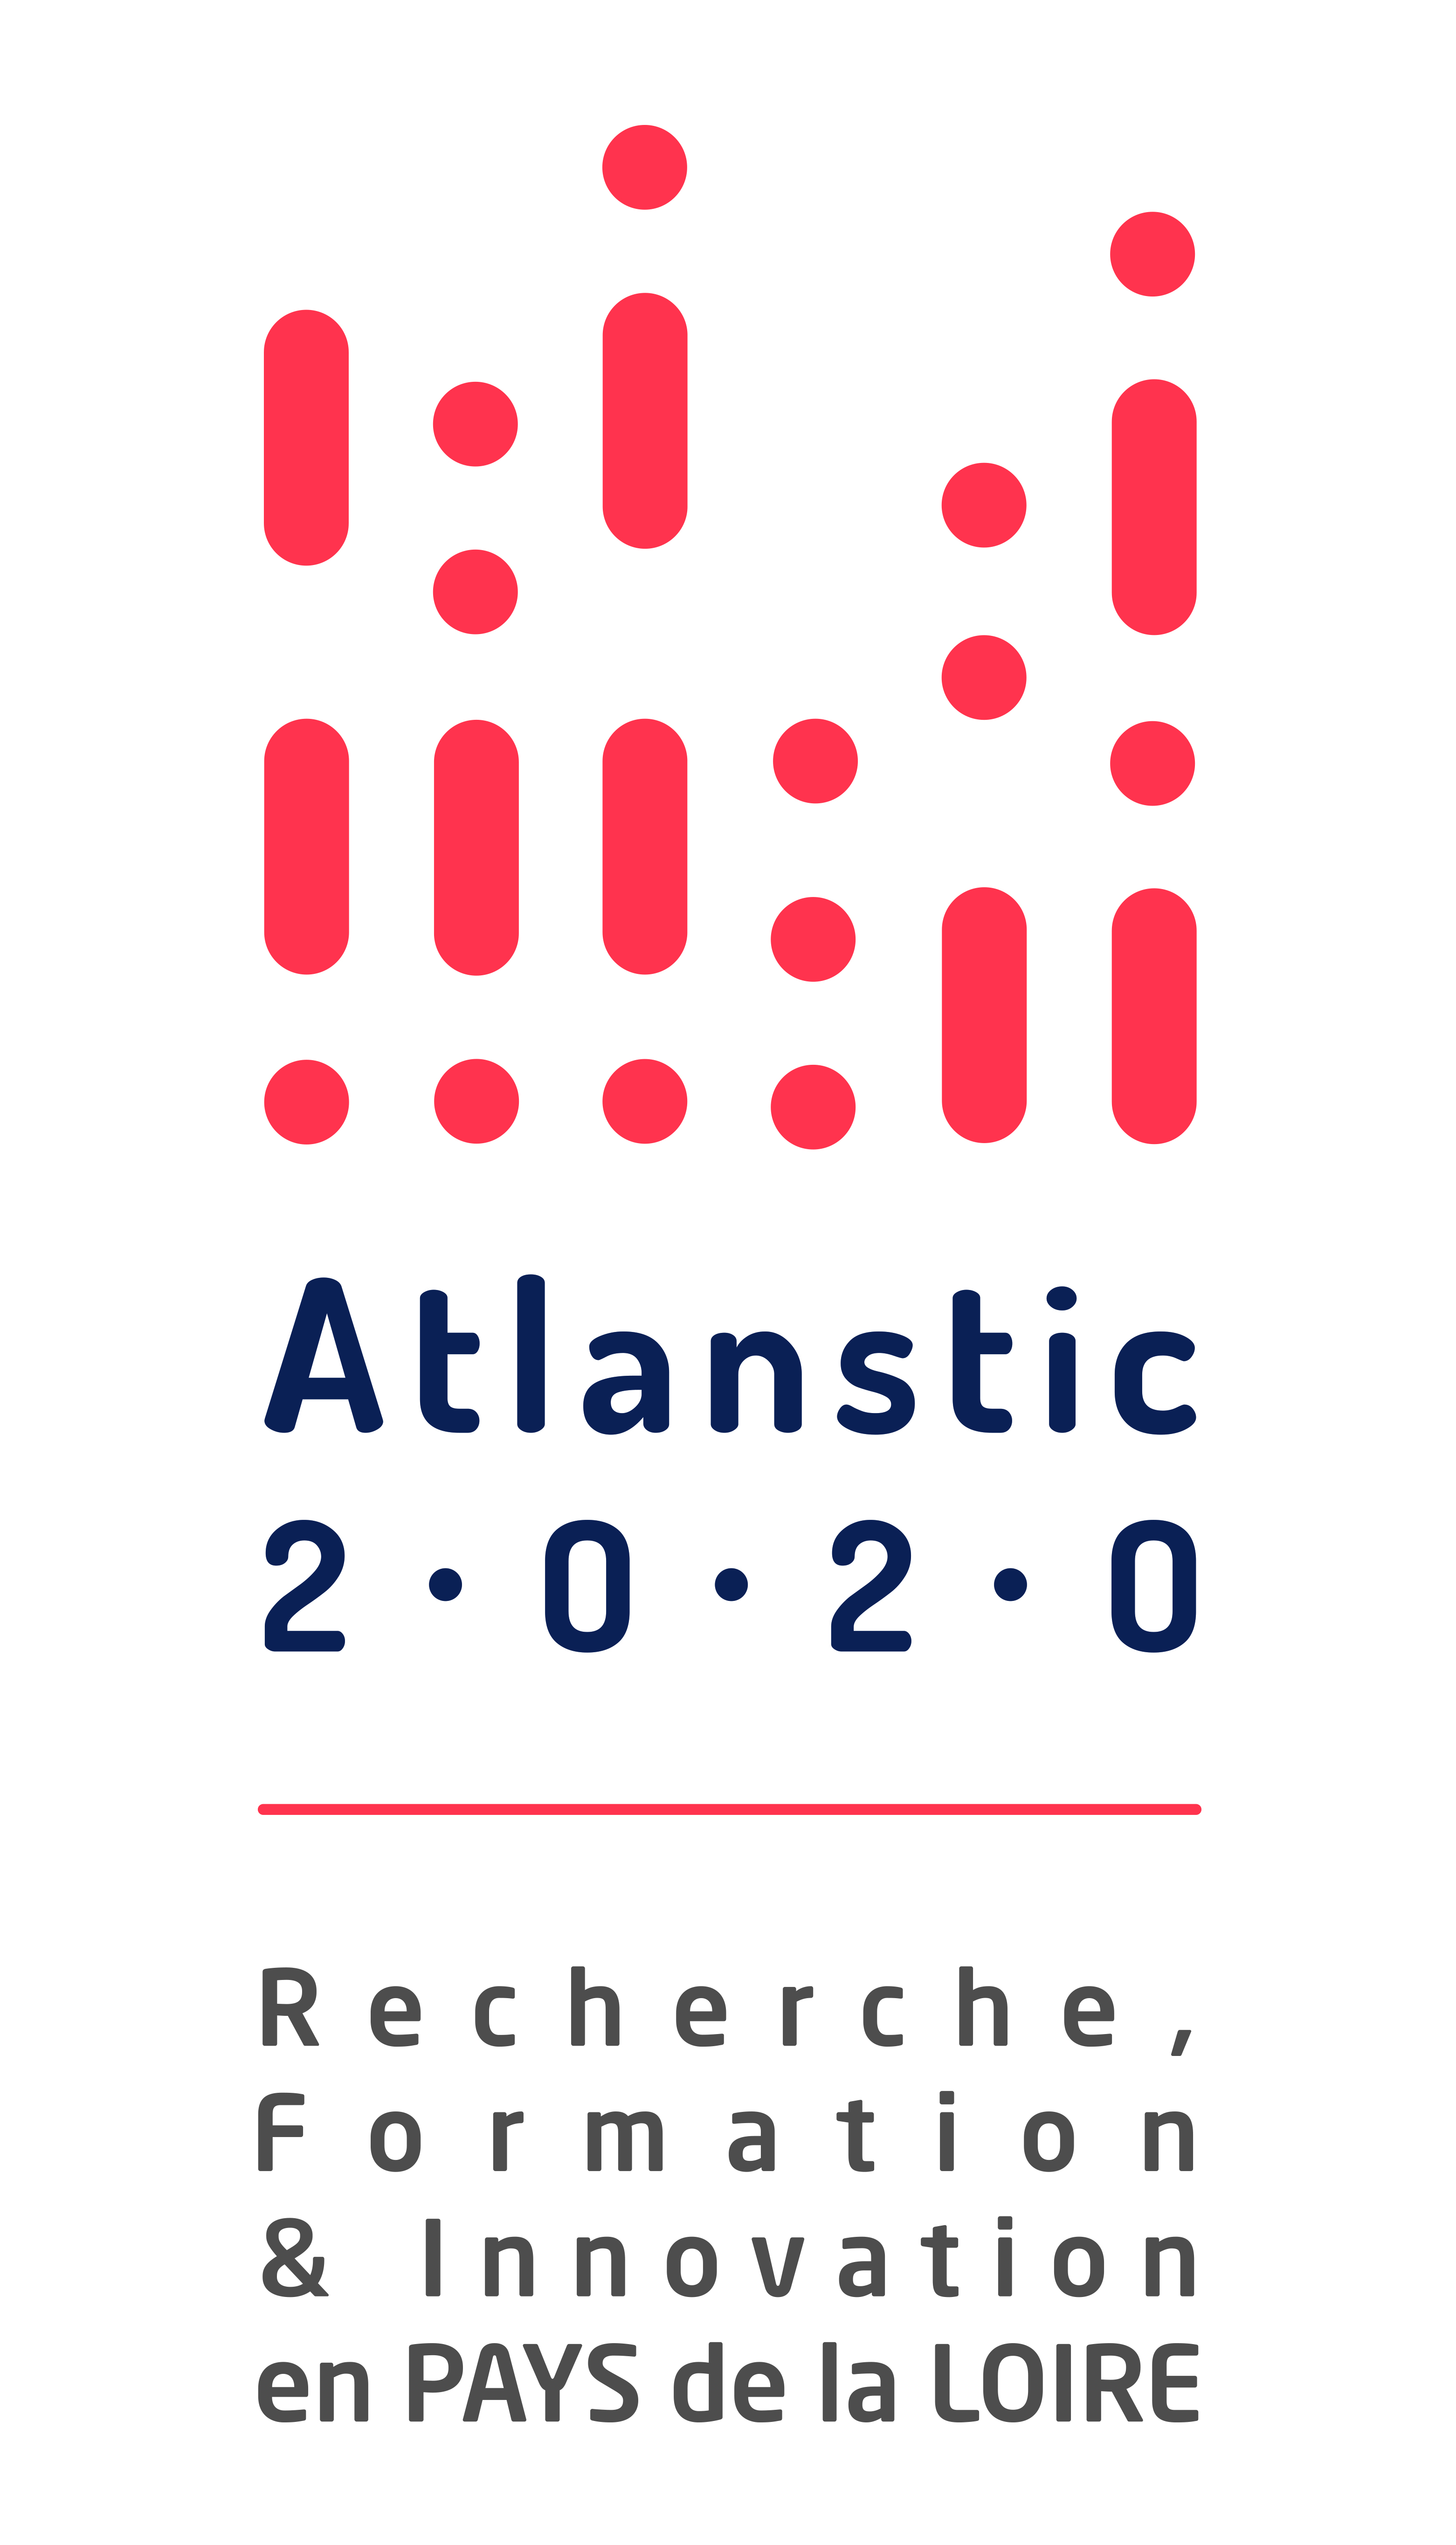 RFI Atlanstic 2020